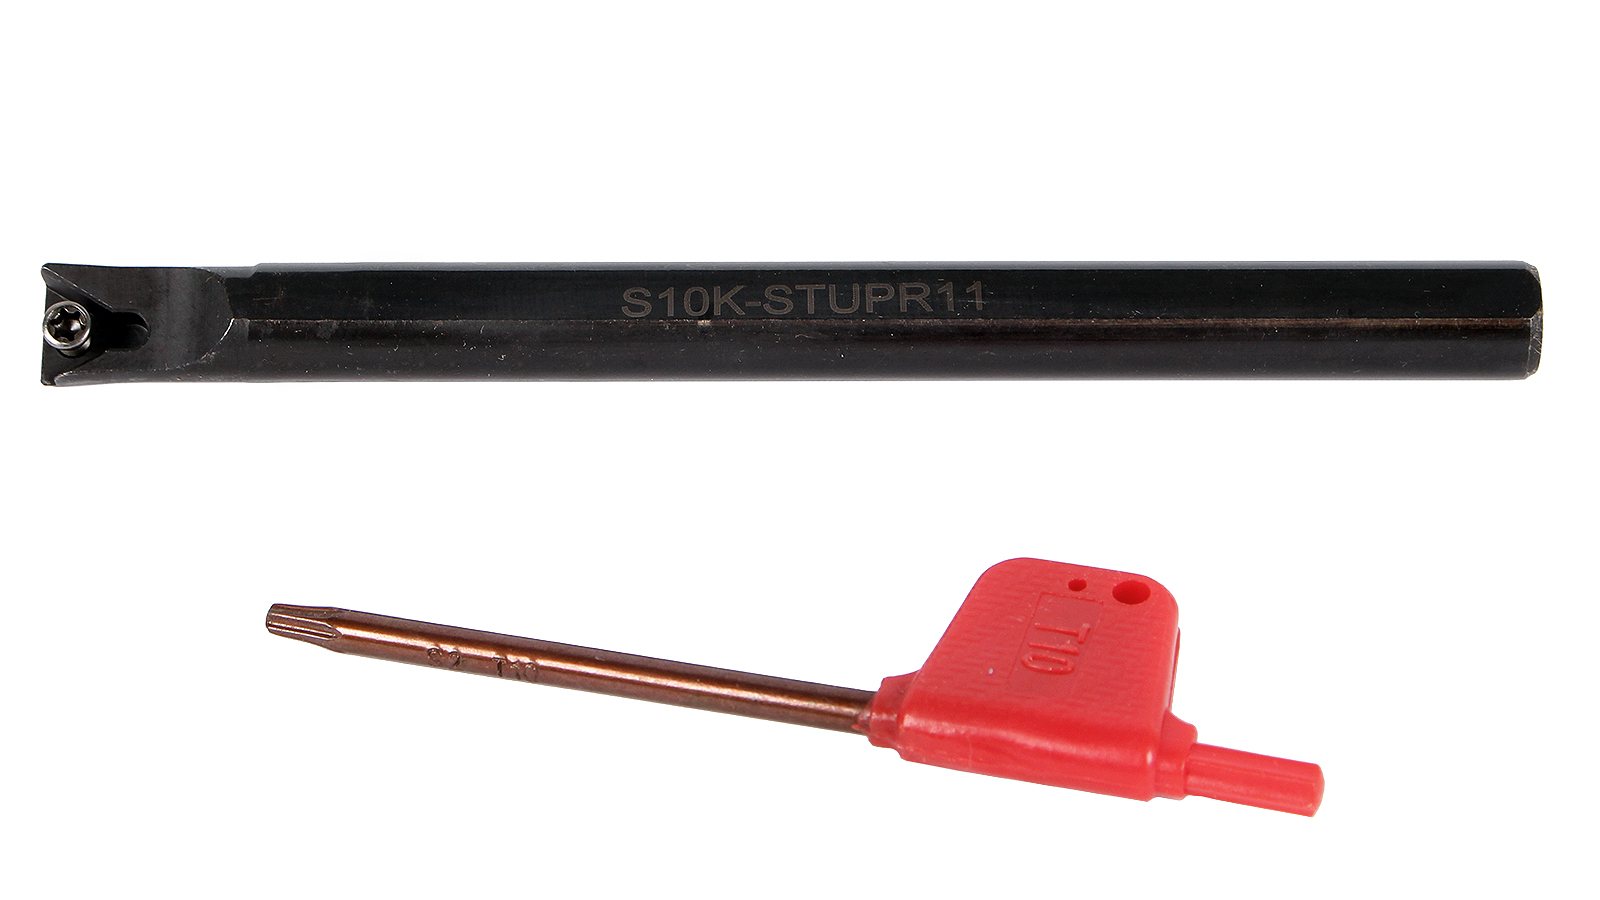 Резец токарный расточной для сквозных и глухих отверстий S10K-STUPR11 расточной резец для глухих отверстий техносталь